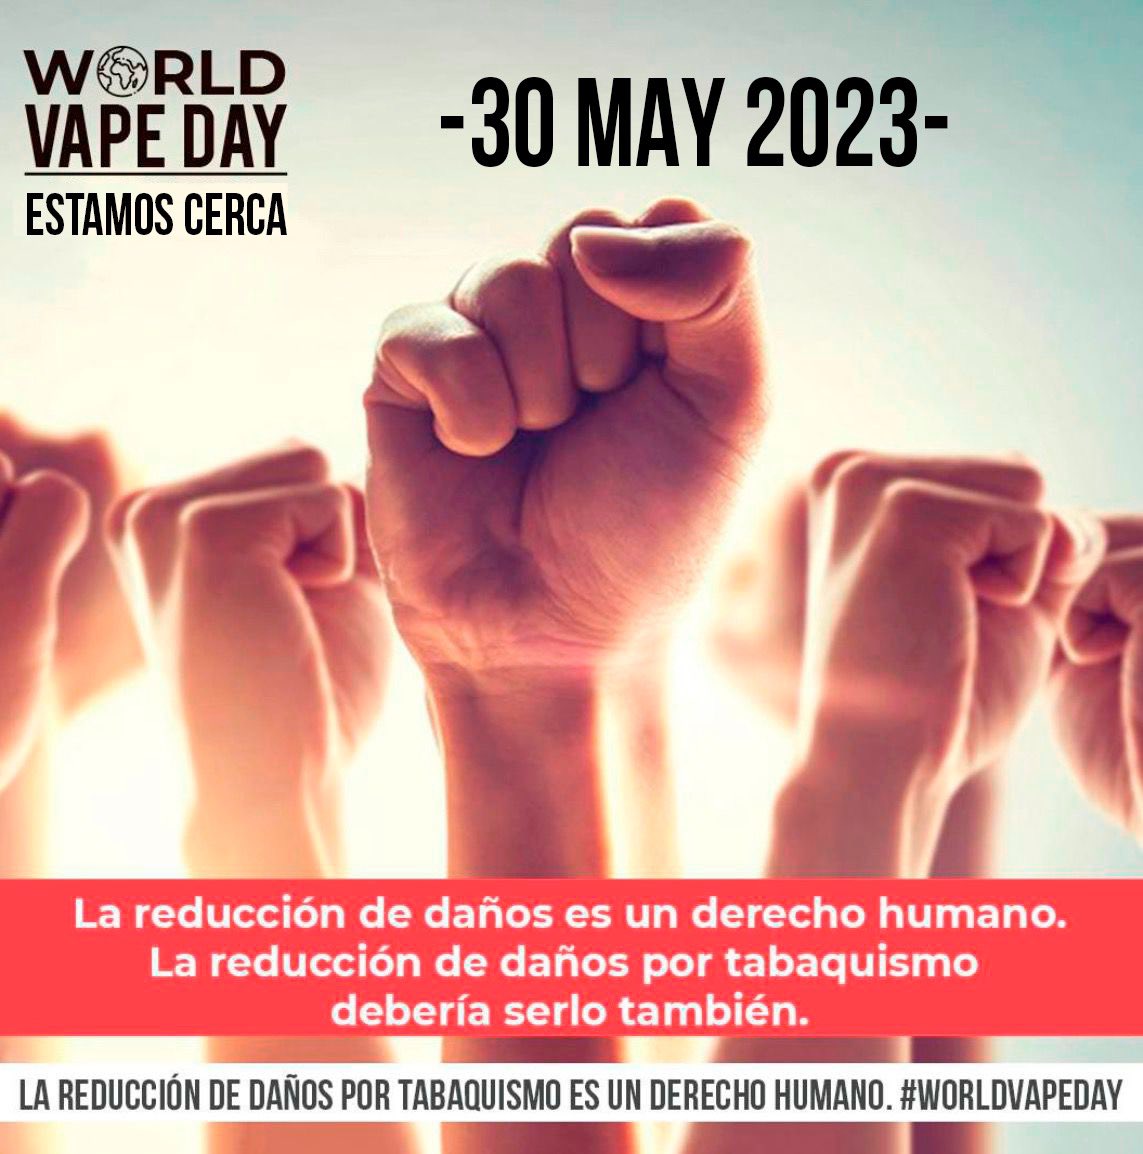 Elegimos el 30 de mayo para celebrar el #WorldVapeDay y compartir historias de éxito y mensajes  positivos sobre el vapeo como #reduccióndedaños. 

Es nuestro derecho humano fundamental, elegir reducir el riesgo y mejorar nuestras vidas al cambiar de fumar a vapear. 

#WVD23